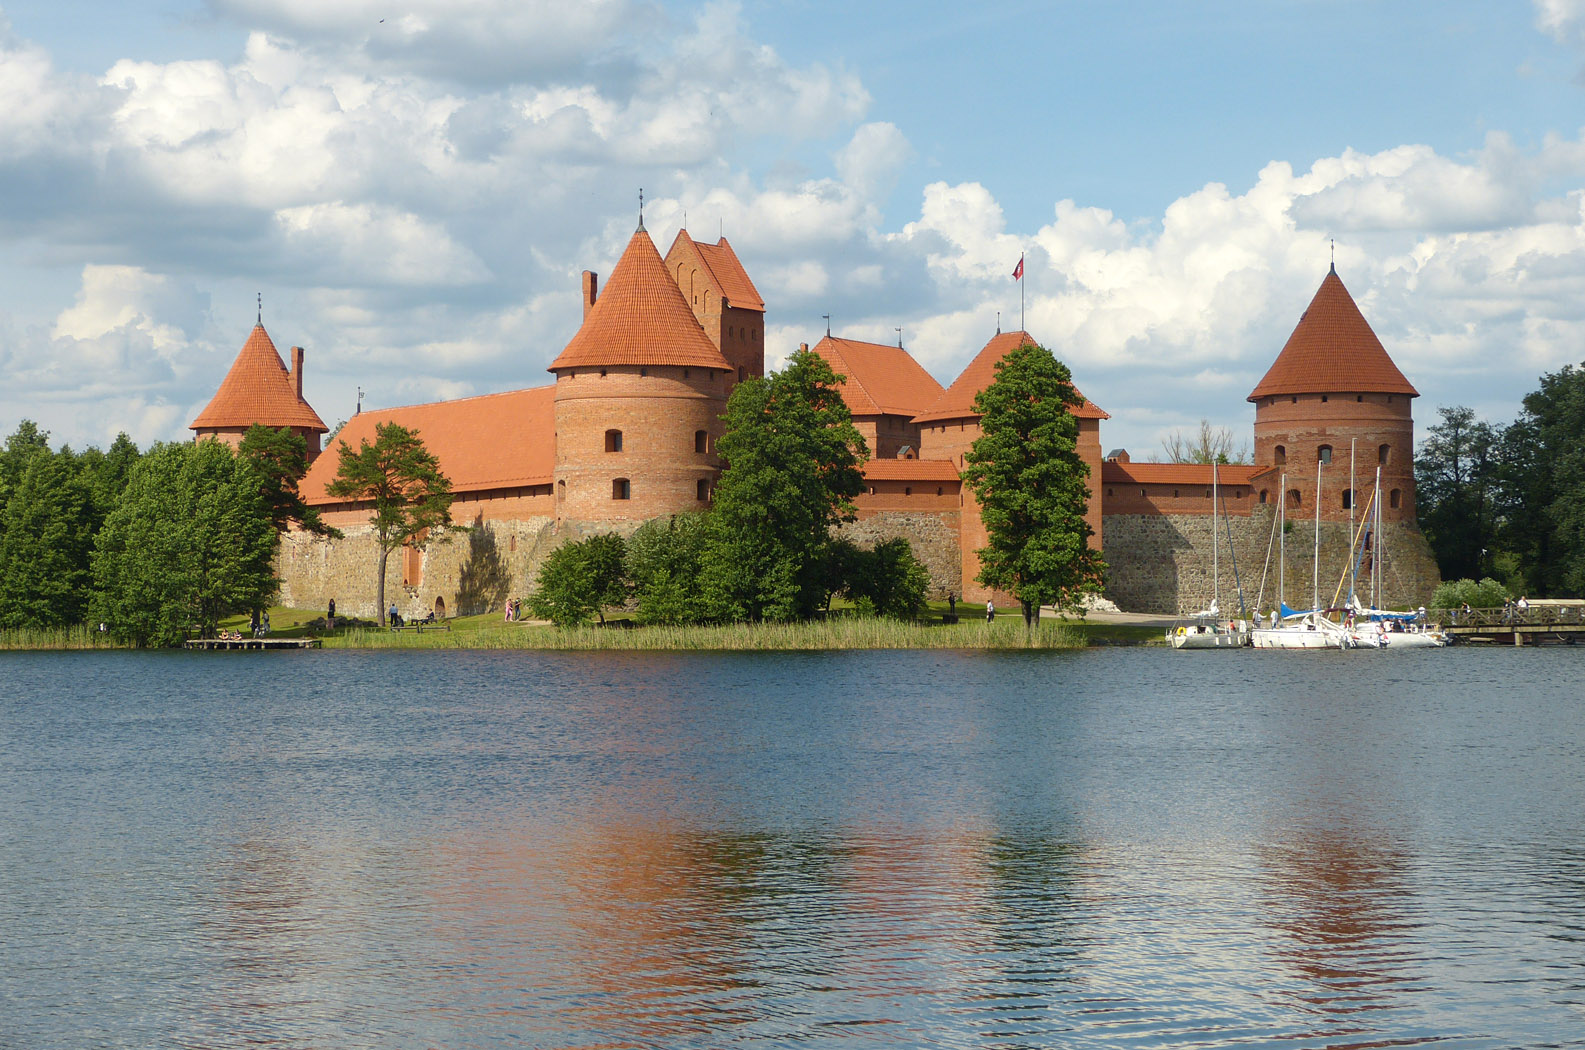 Trakai Island Castle, Trakai, Lithuania